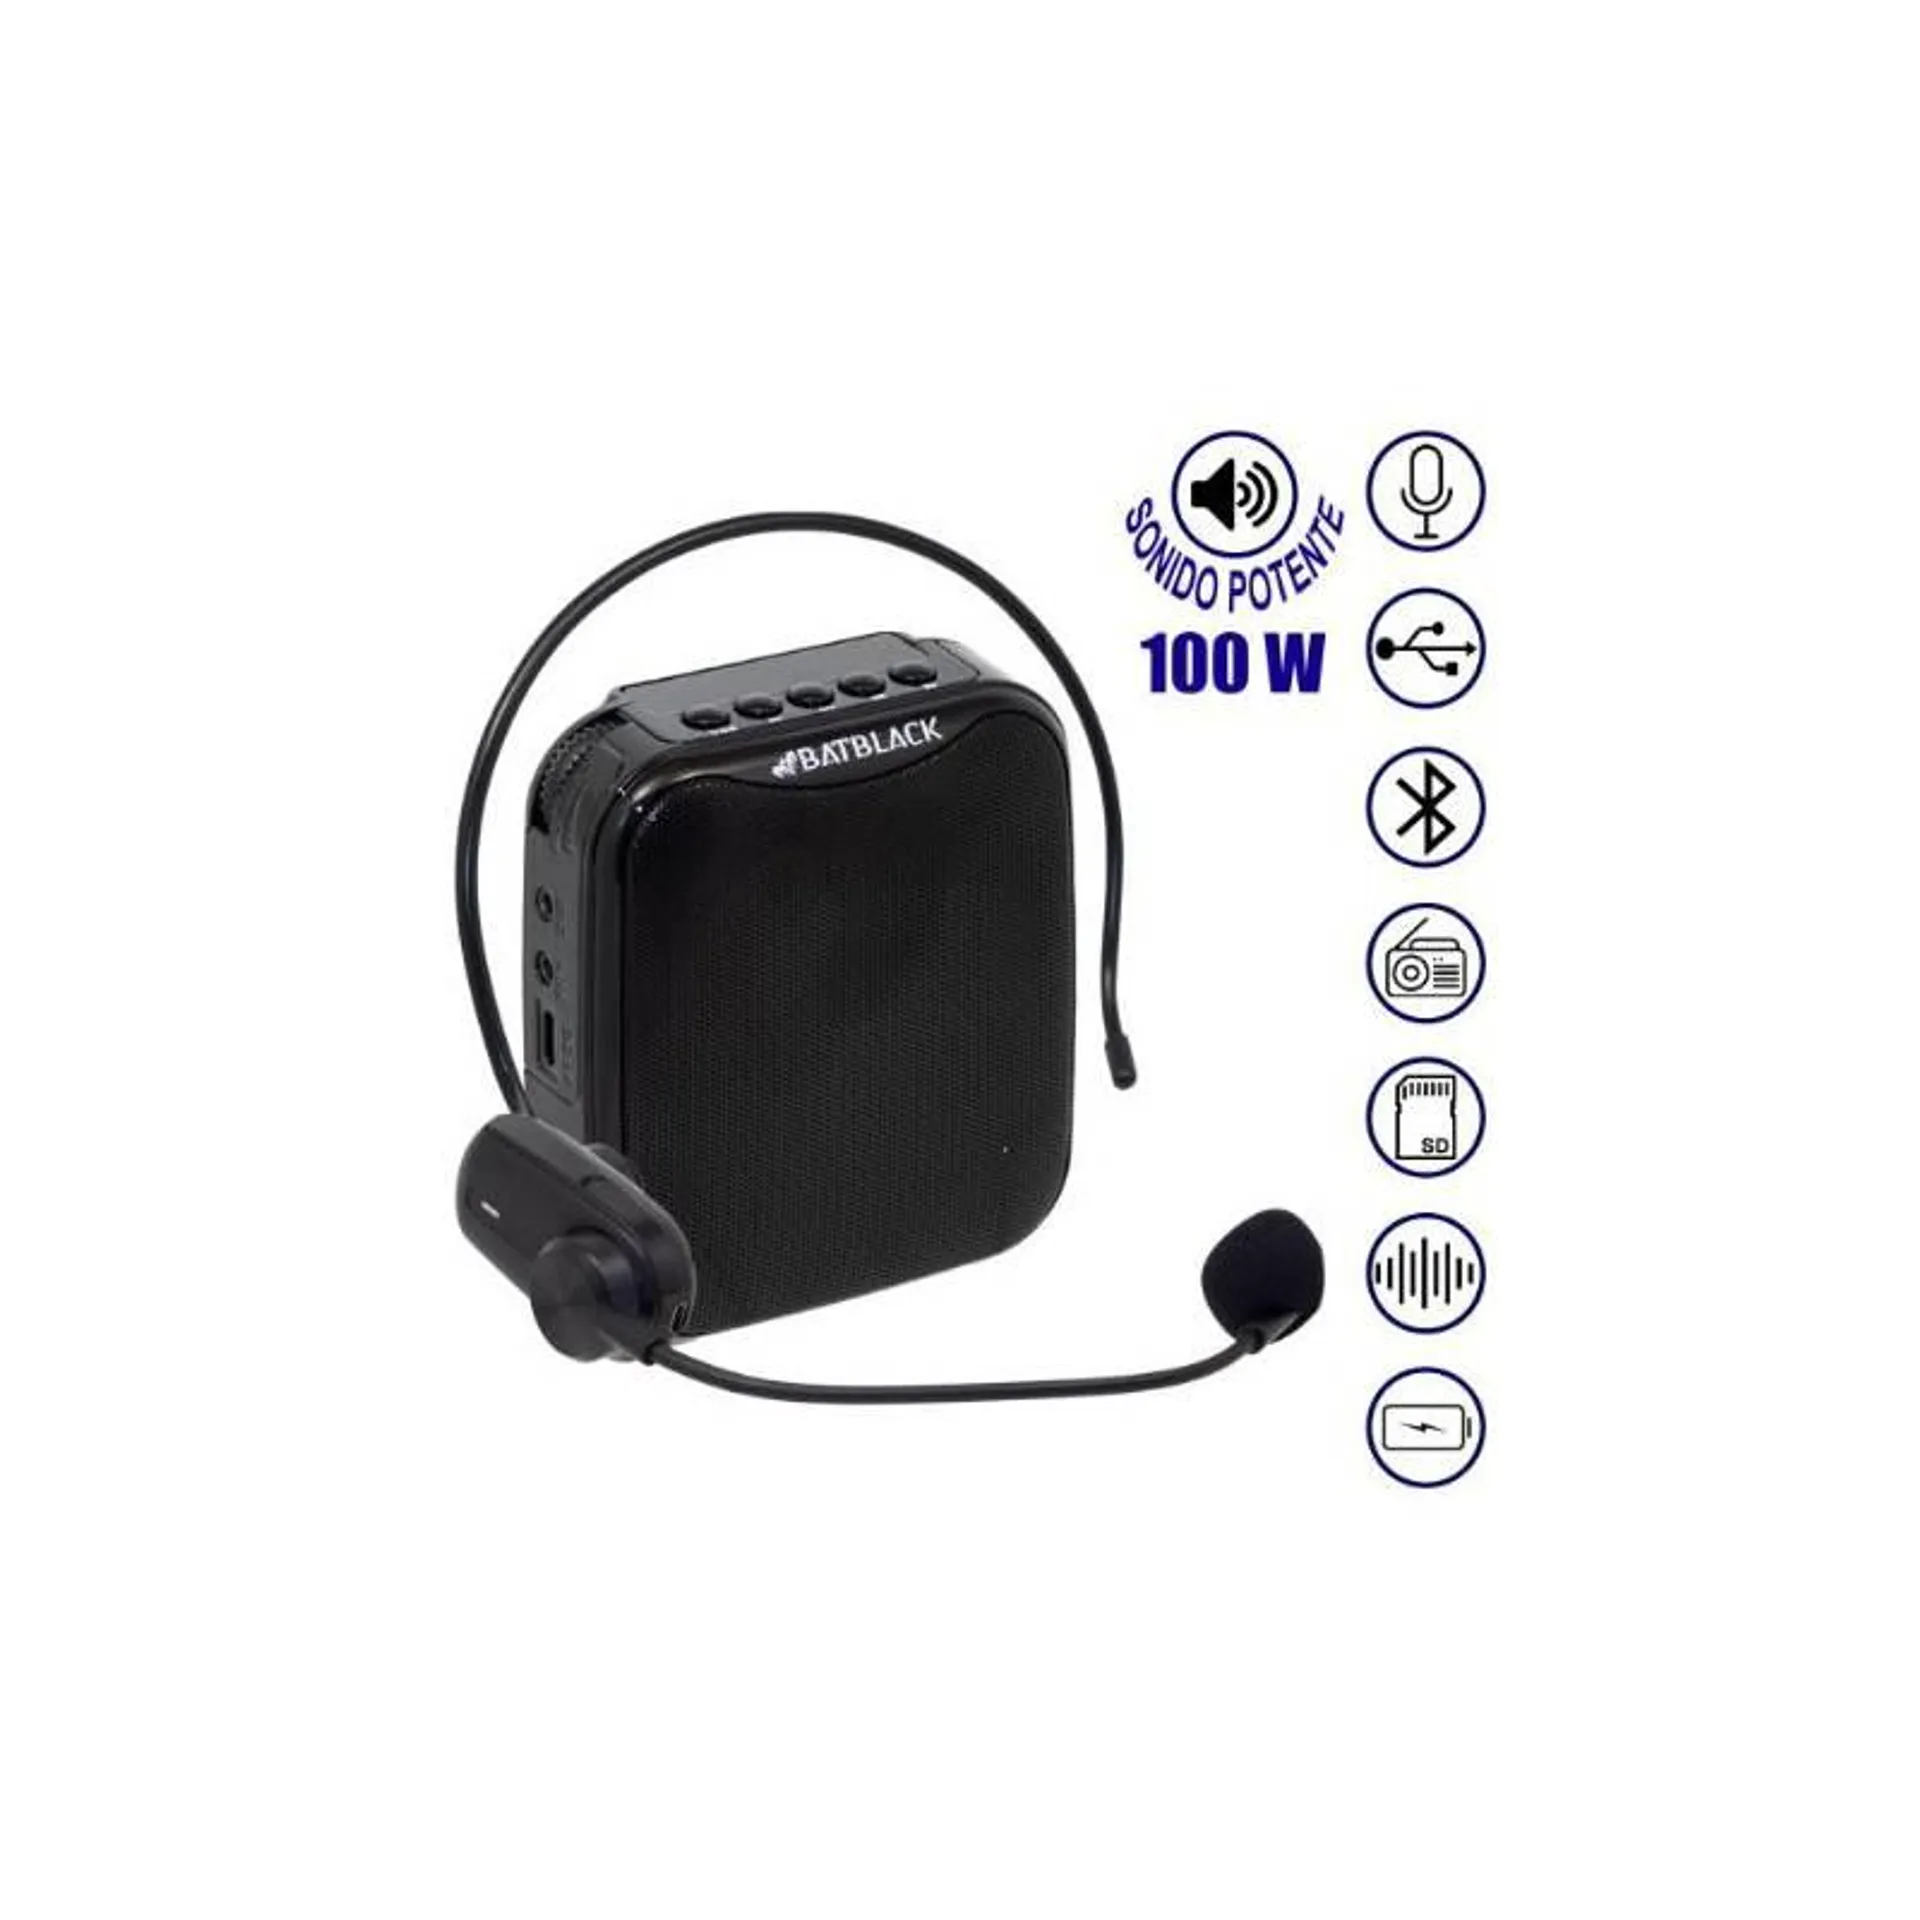 Mini Amplificador de Voz Recargable Profesional Inalámbrico BT-V317 BATBLACK